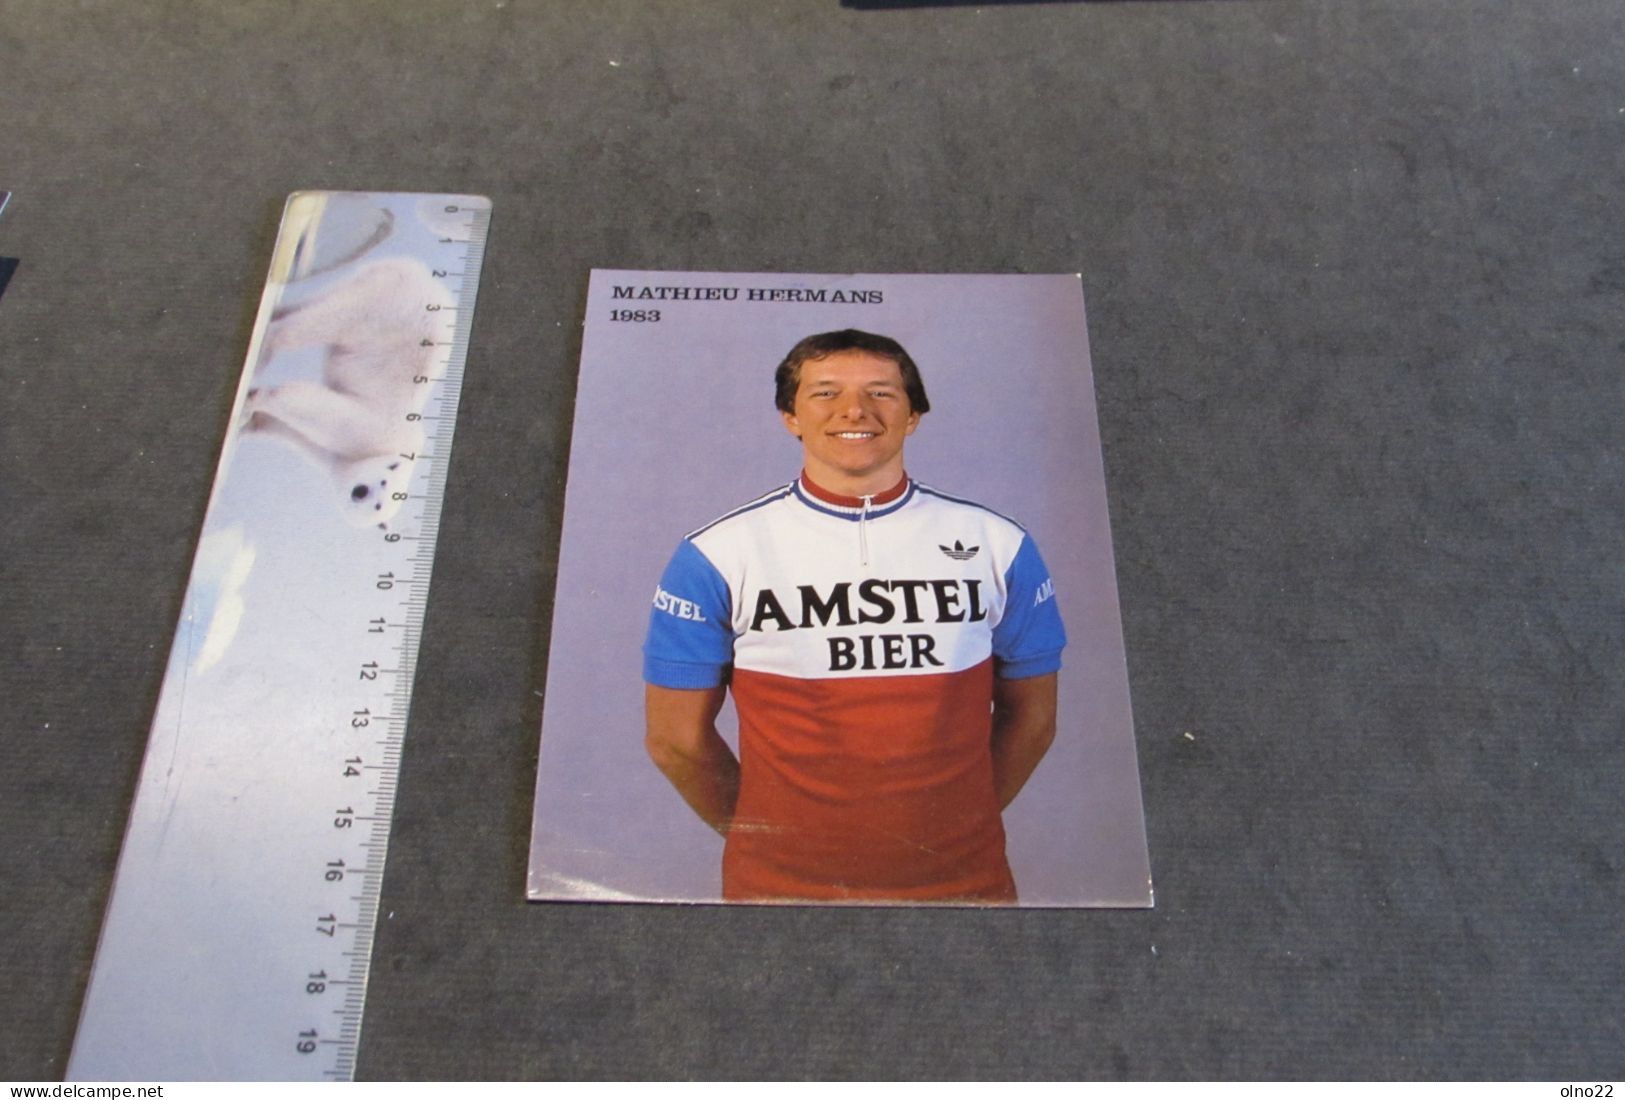 MATHIEU HERMANS 1983  - AMSTEL BIER - PHOTO COULEURS - VOIR SCANS - Sportsmen